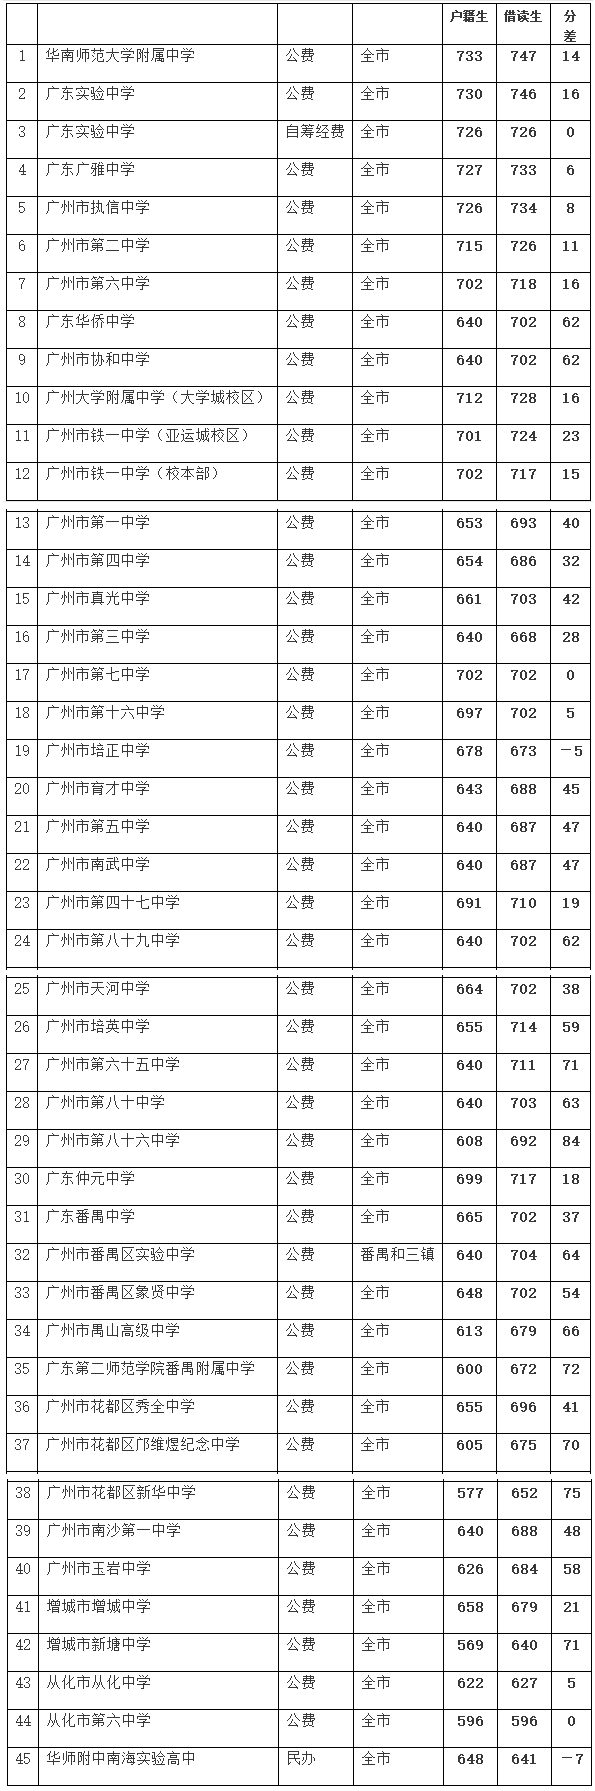 深度分析丨广州中考提前批，各校表现究竟几何？9